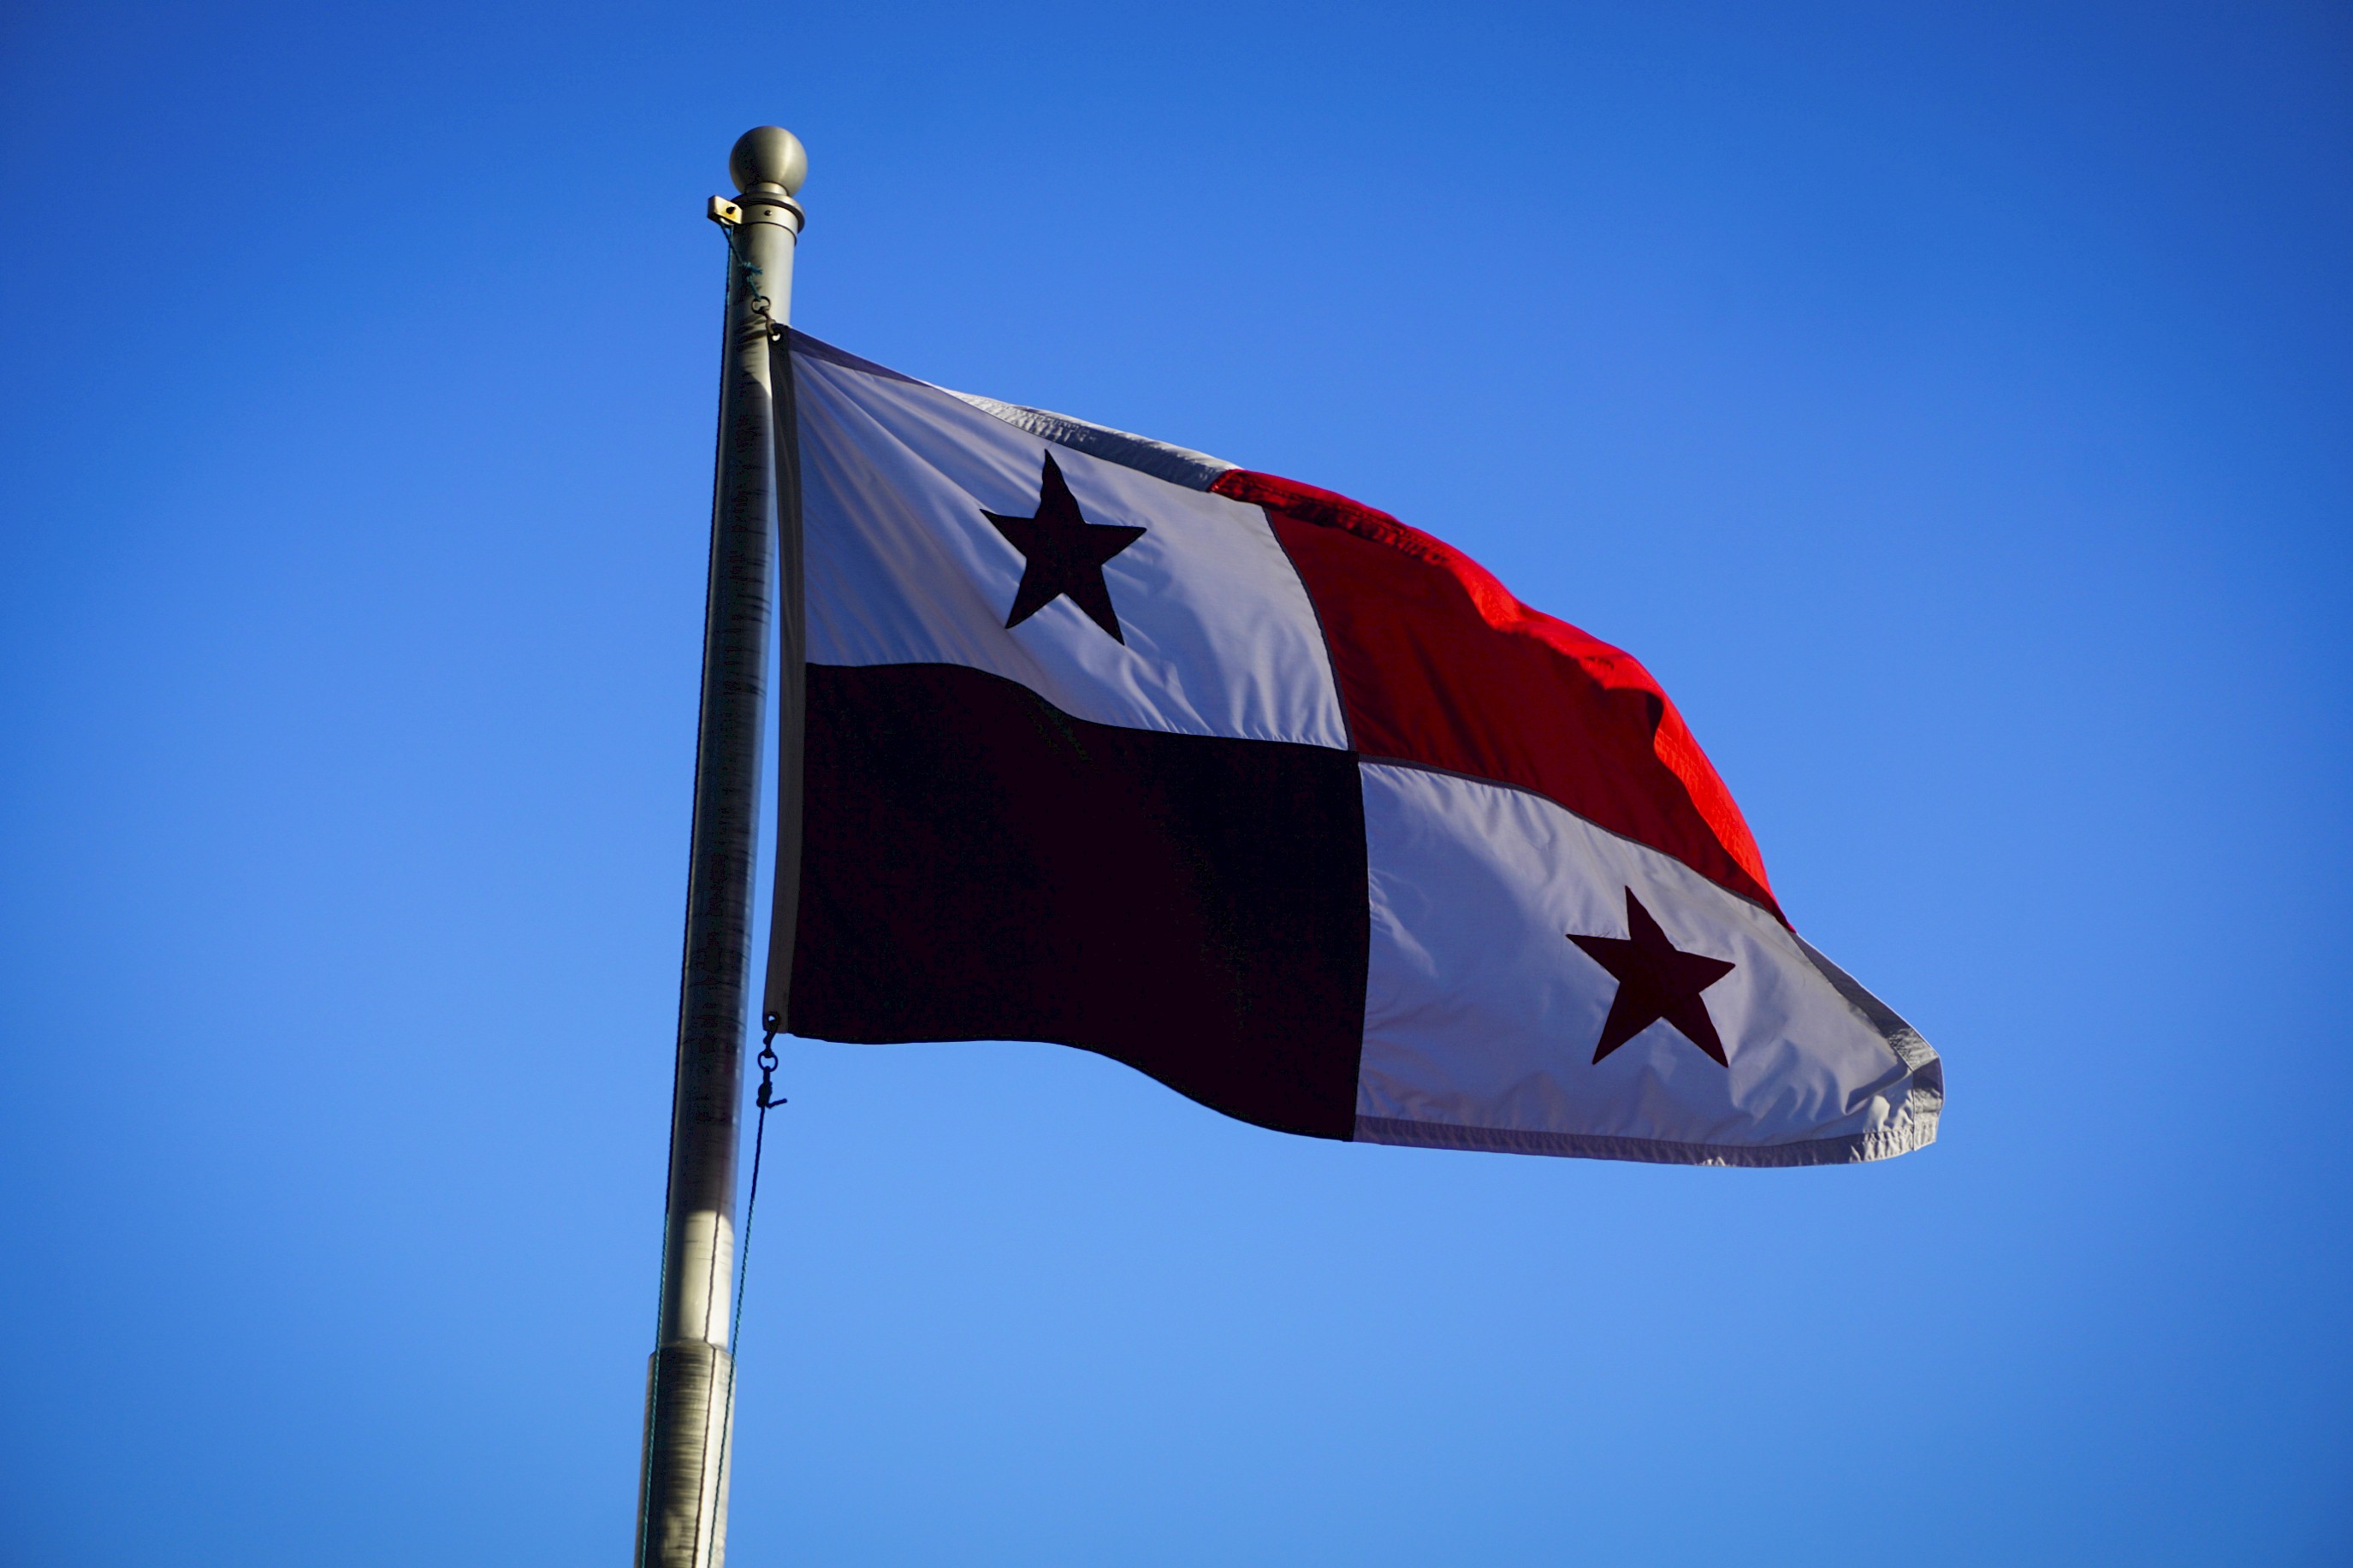 Bandera Panameña, Bandera de Panamá. El cielo de Fondo. enseña, estandarte, insignia, emblema, banderín, banderola, blasón, confalón, distintivo, divisa, gallardete, guión, oriflama, pabellón, pendón, símbolo, señal .